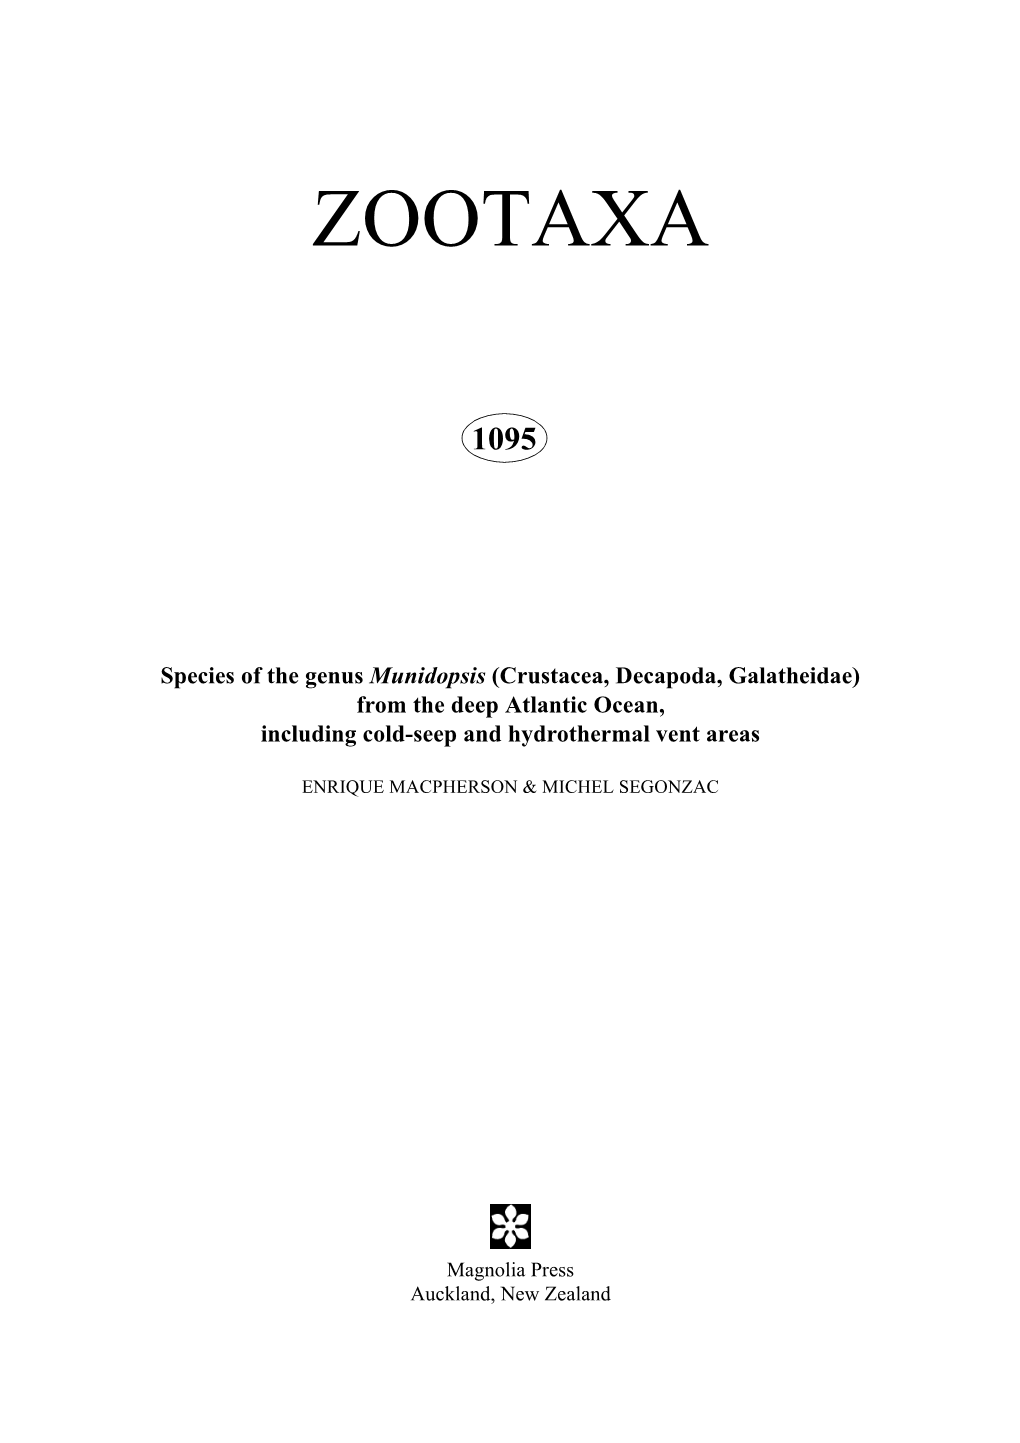 Zootaxa, Munidopsis